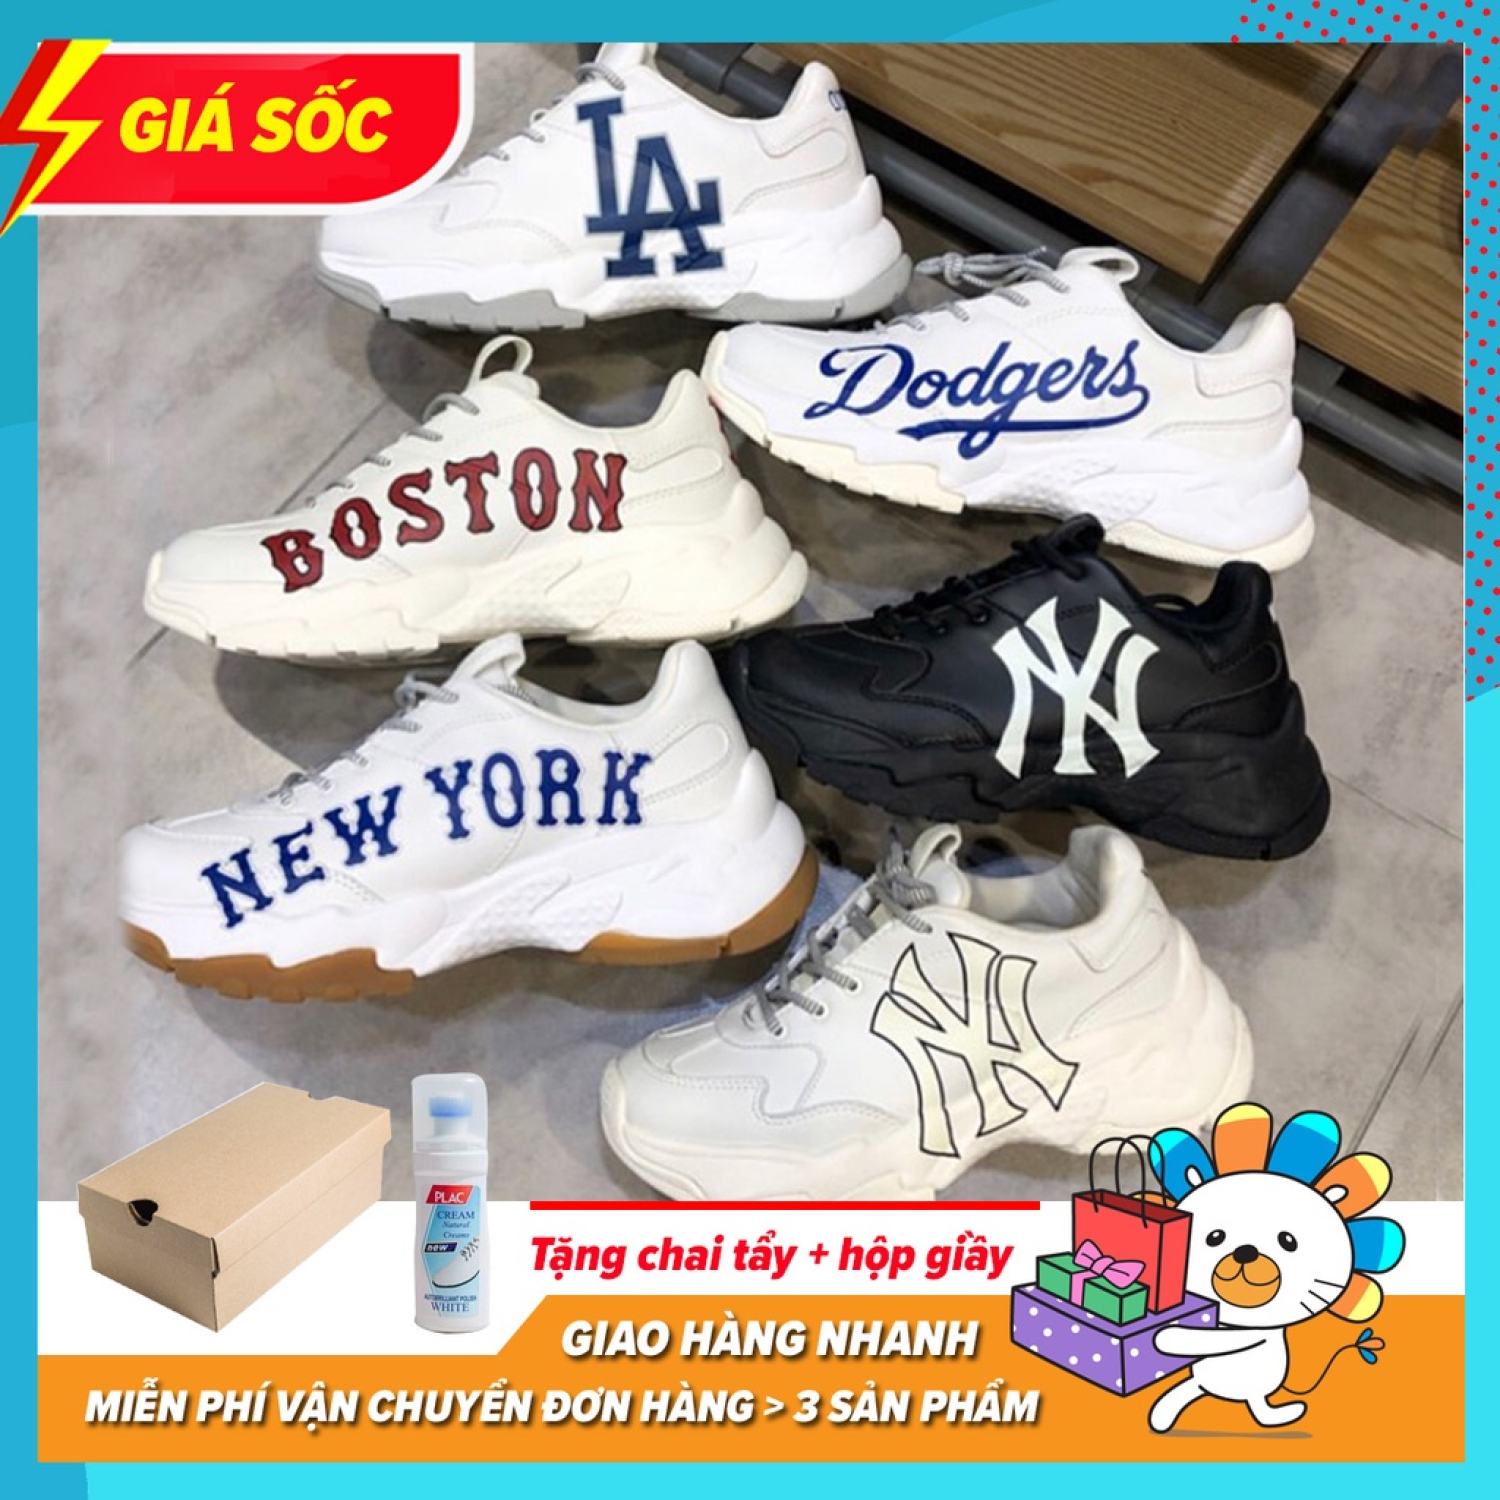 [Full Box Bill] Giày Sneaker MLB BOSTON, NY chữ vàng, NY chữ đen, LA, BIG BALL NEW YORK chuẩn 1 1 bản tr ng đế tách thumbnail